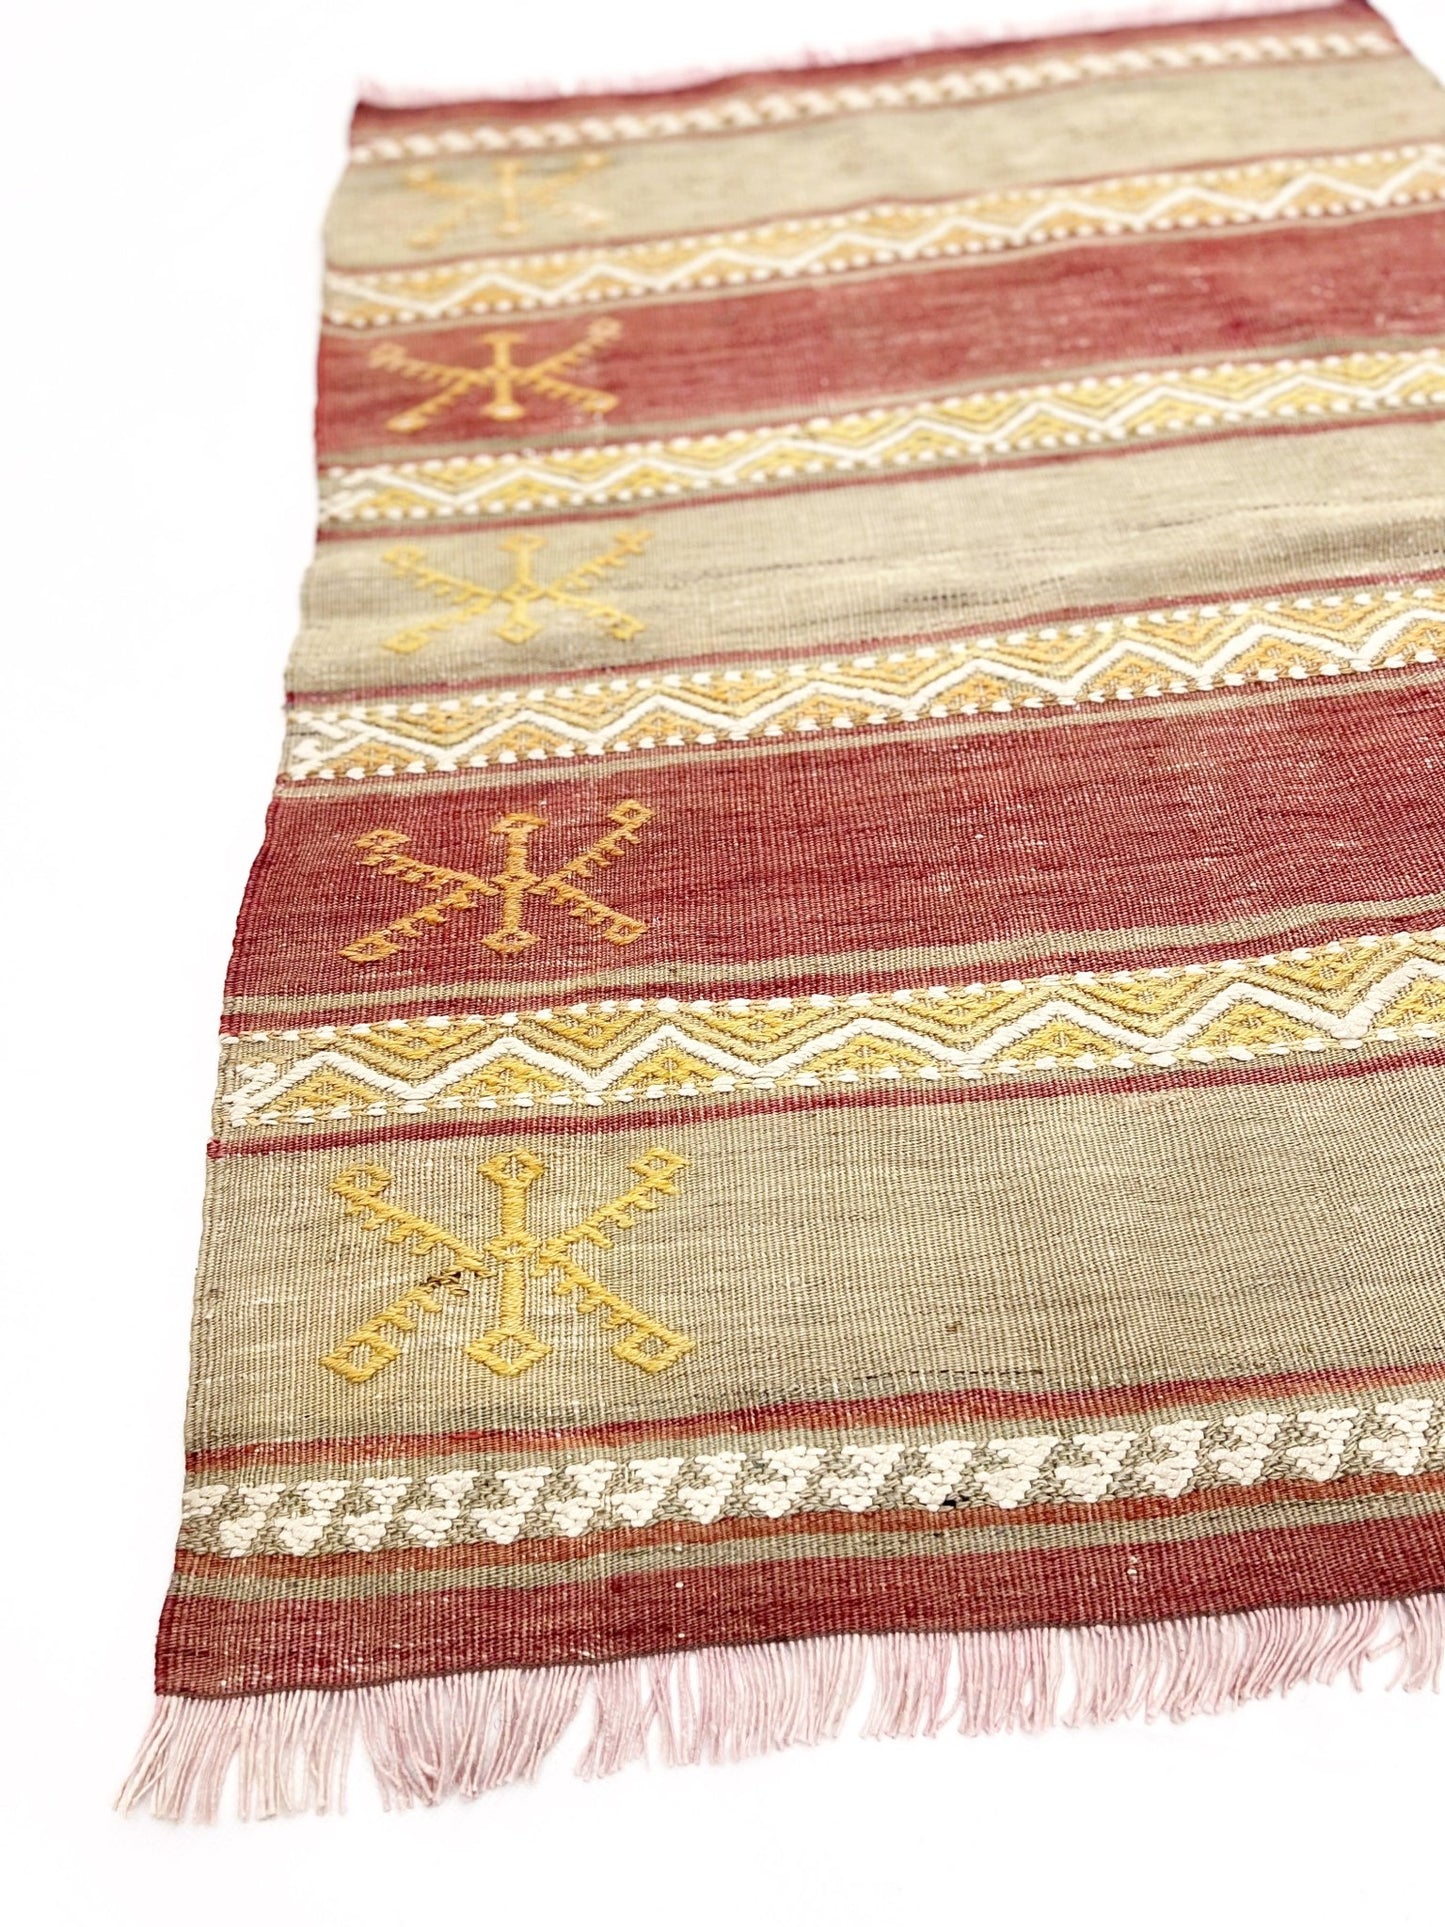 Sivas handmade wool mini rug bathmat doormat. Turkish rug shop san francisco bay area.